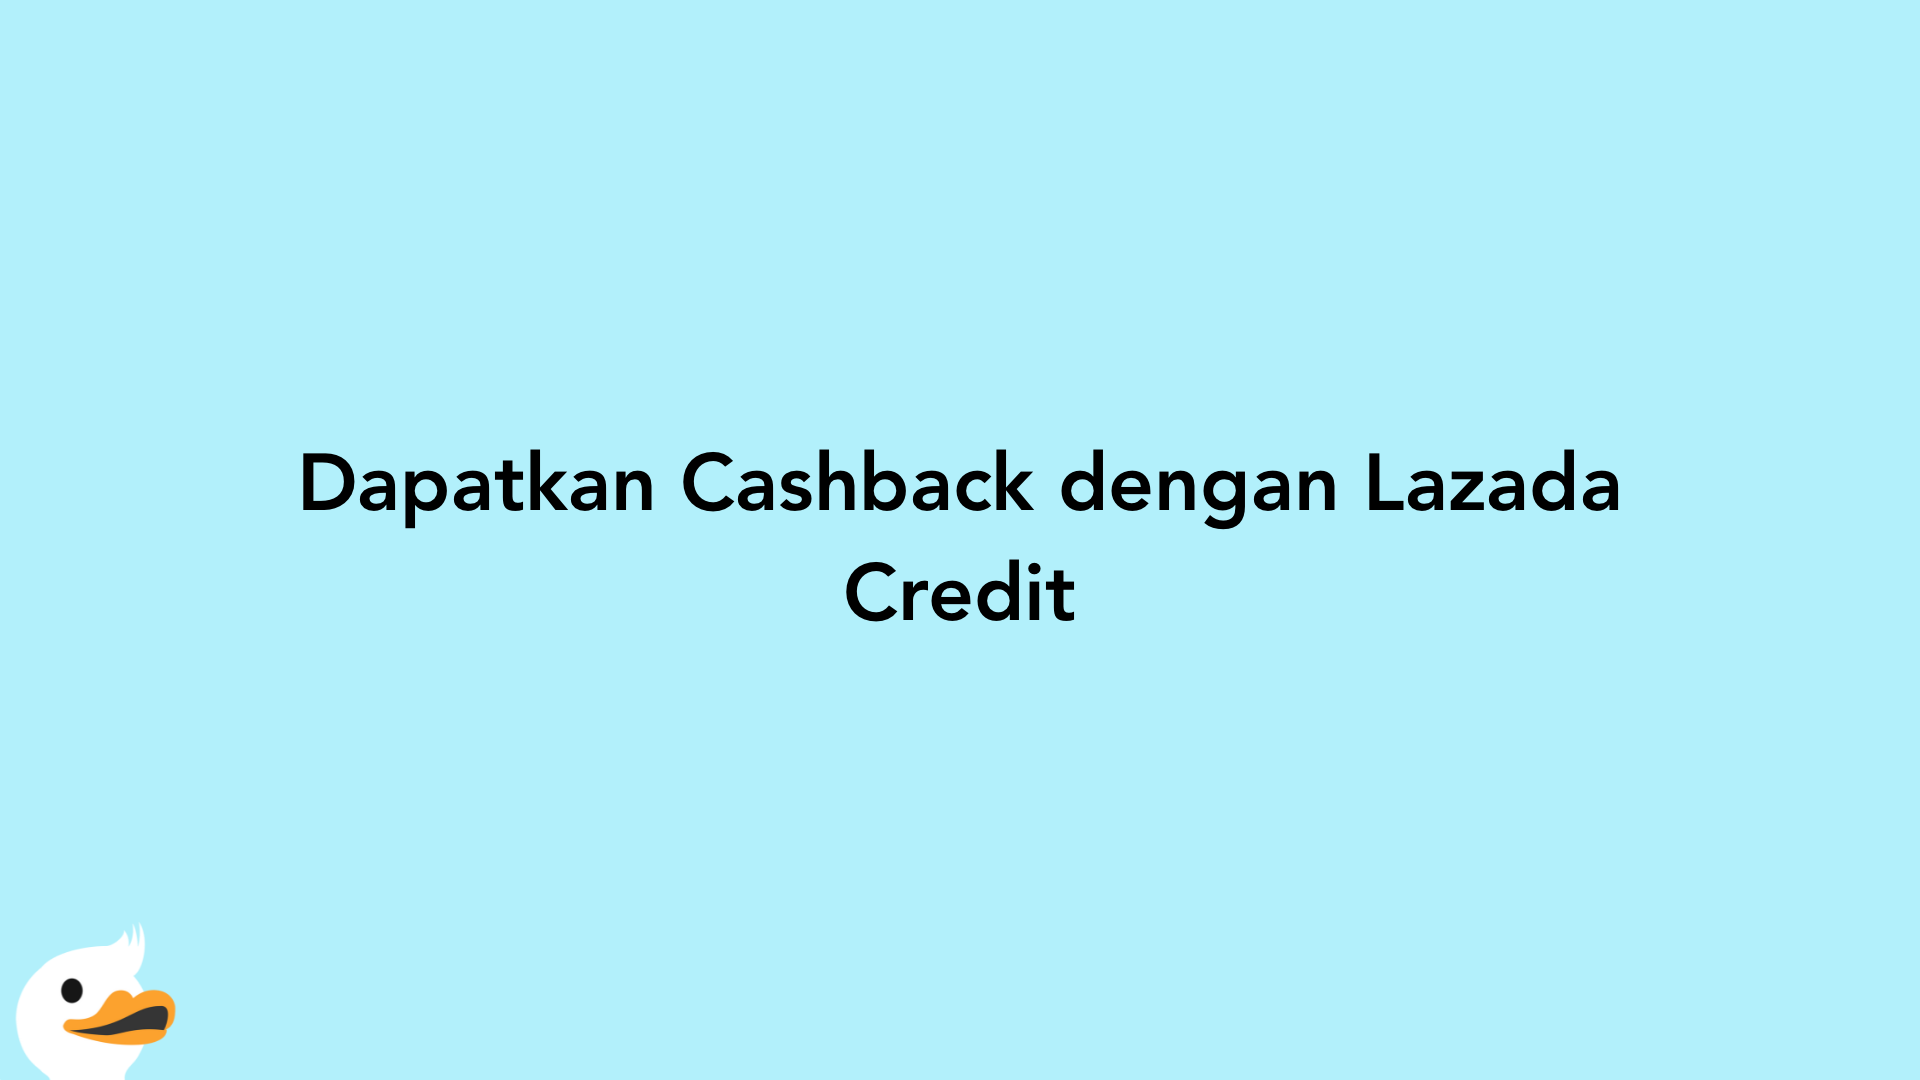 Dapatkan Cashback dengan Lazada Credit